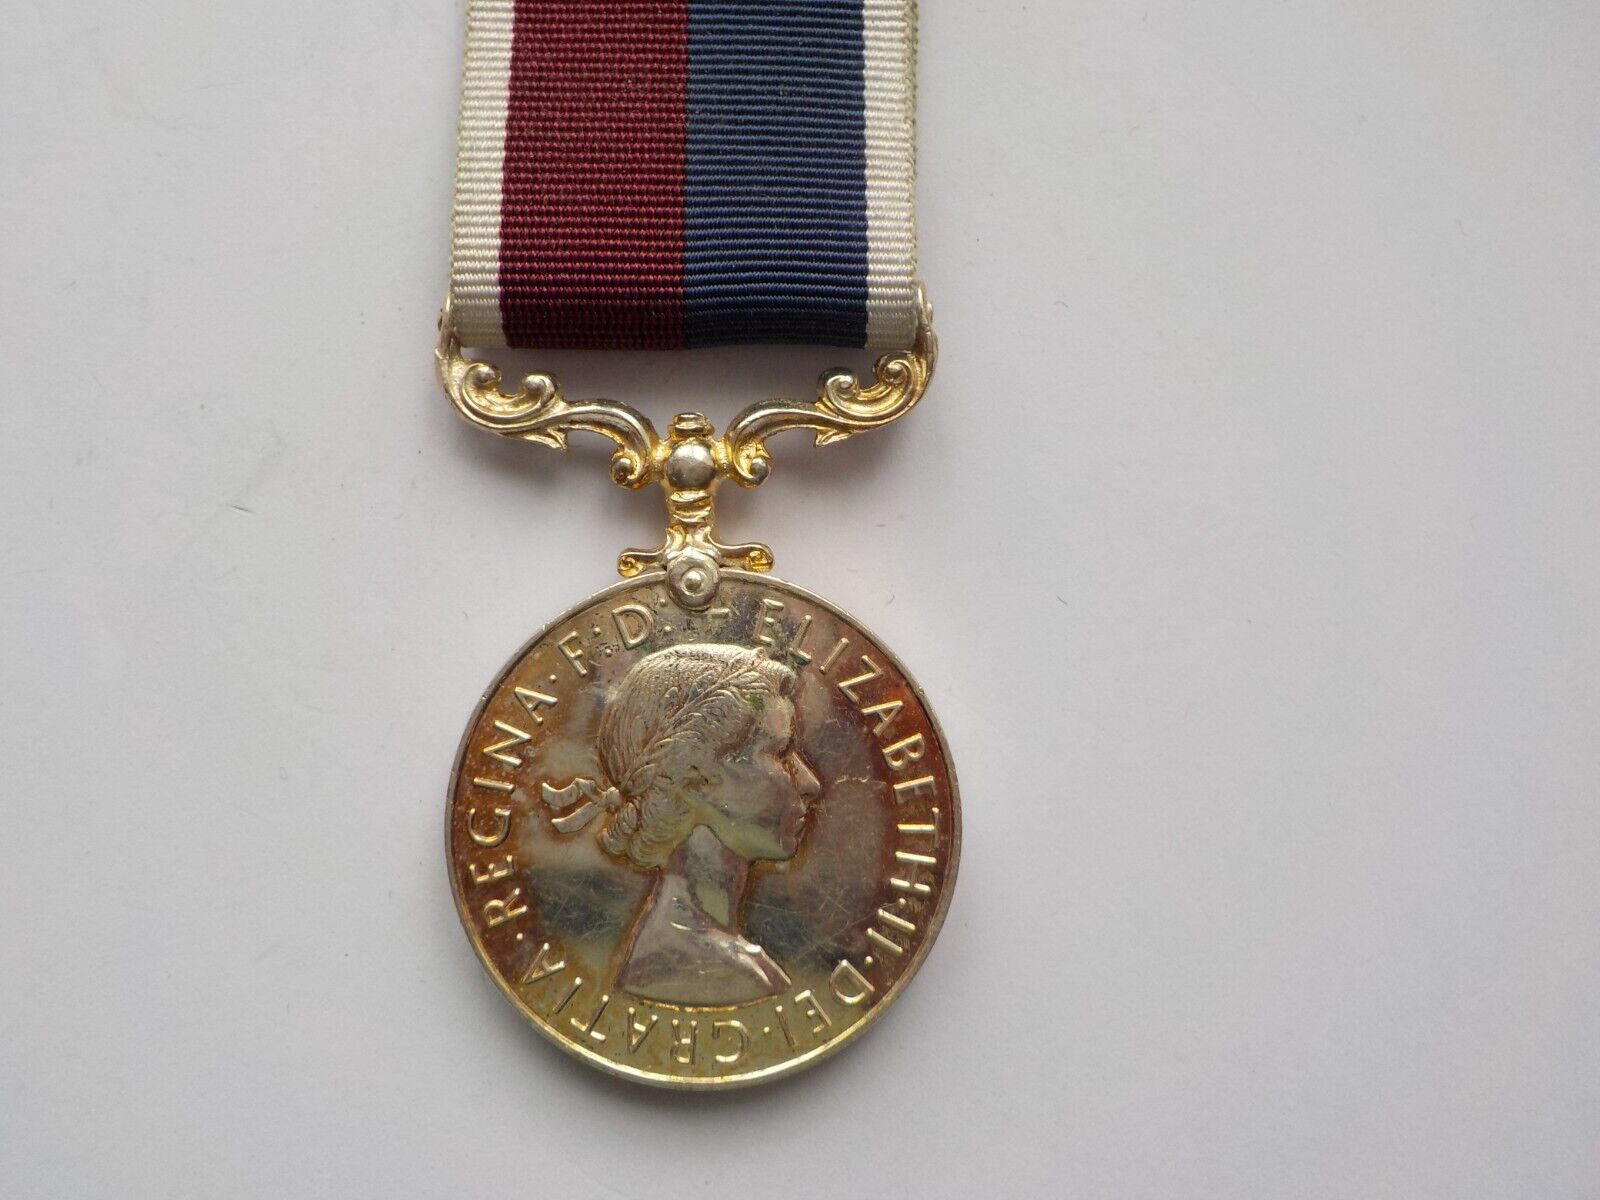 RAF service medal